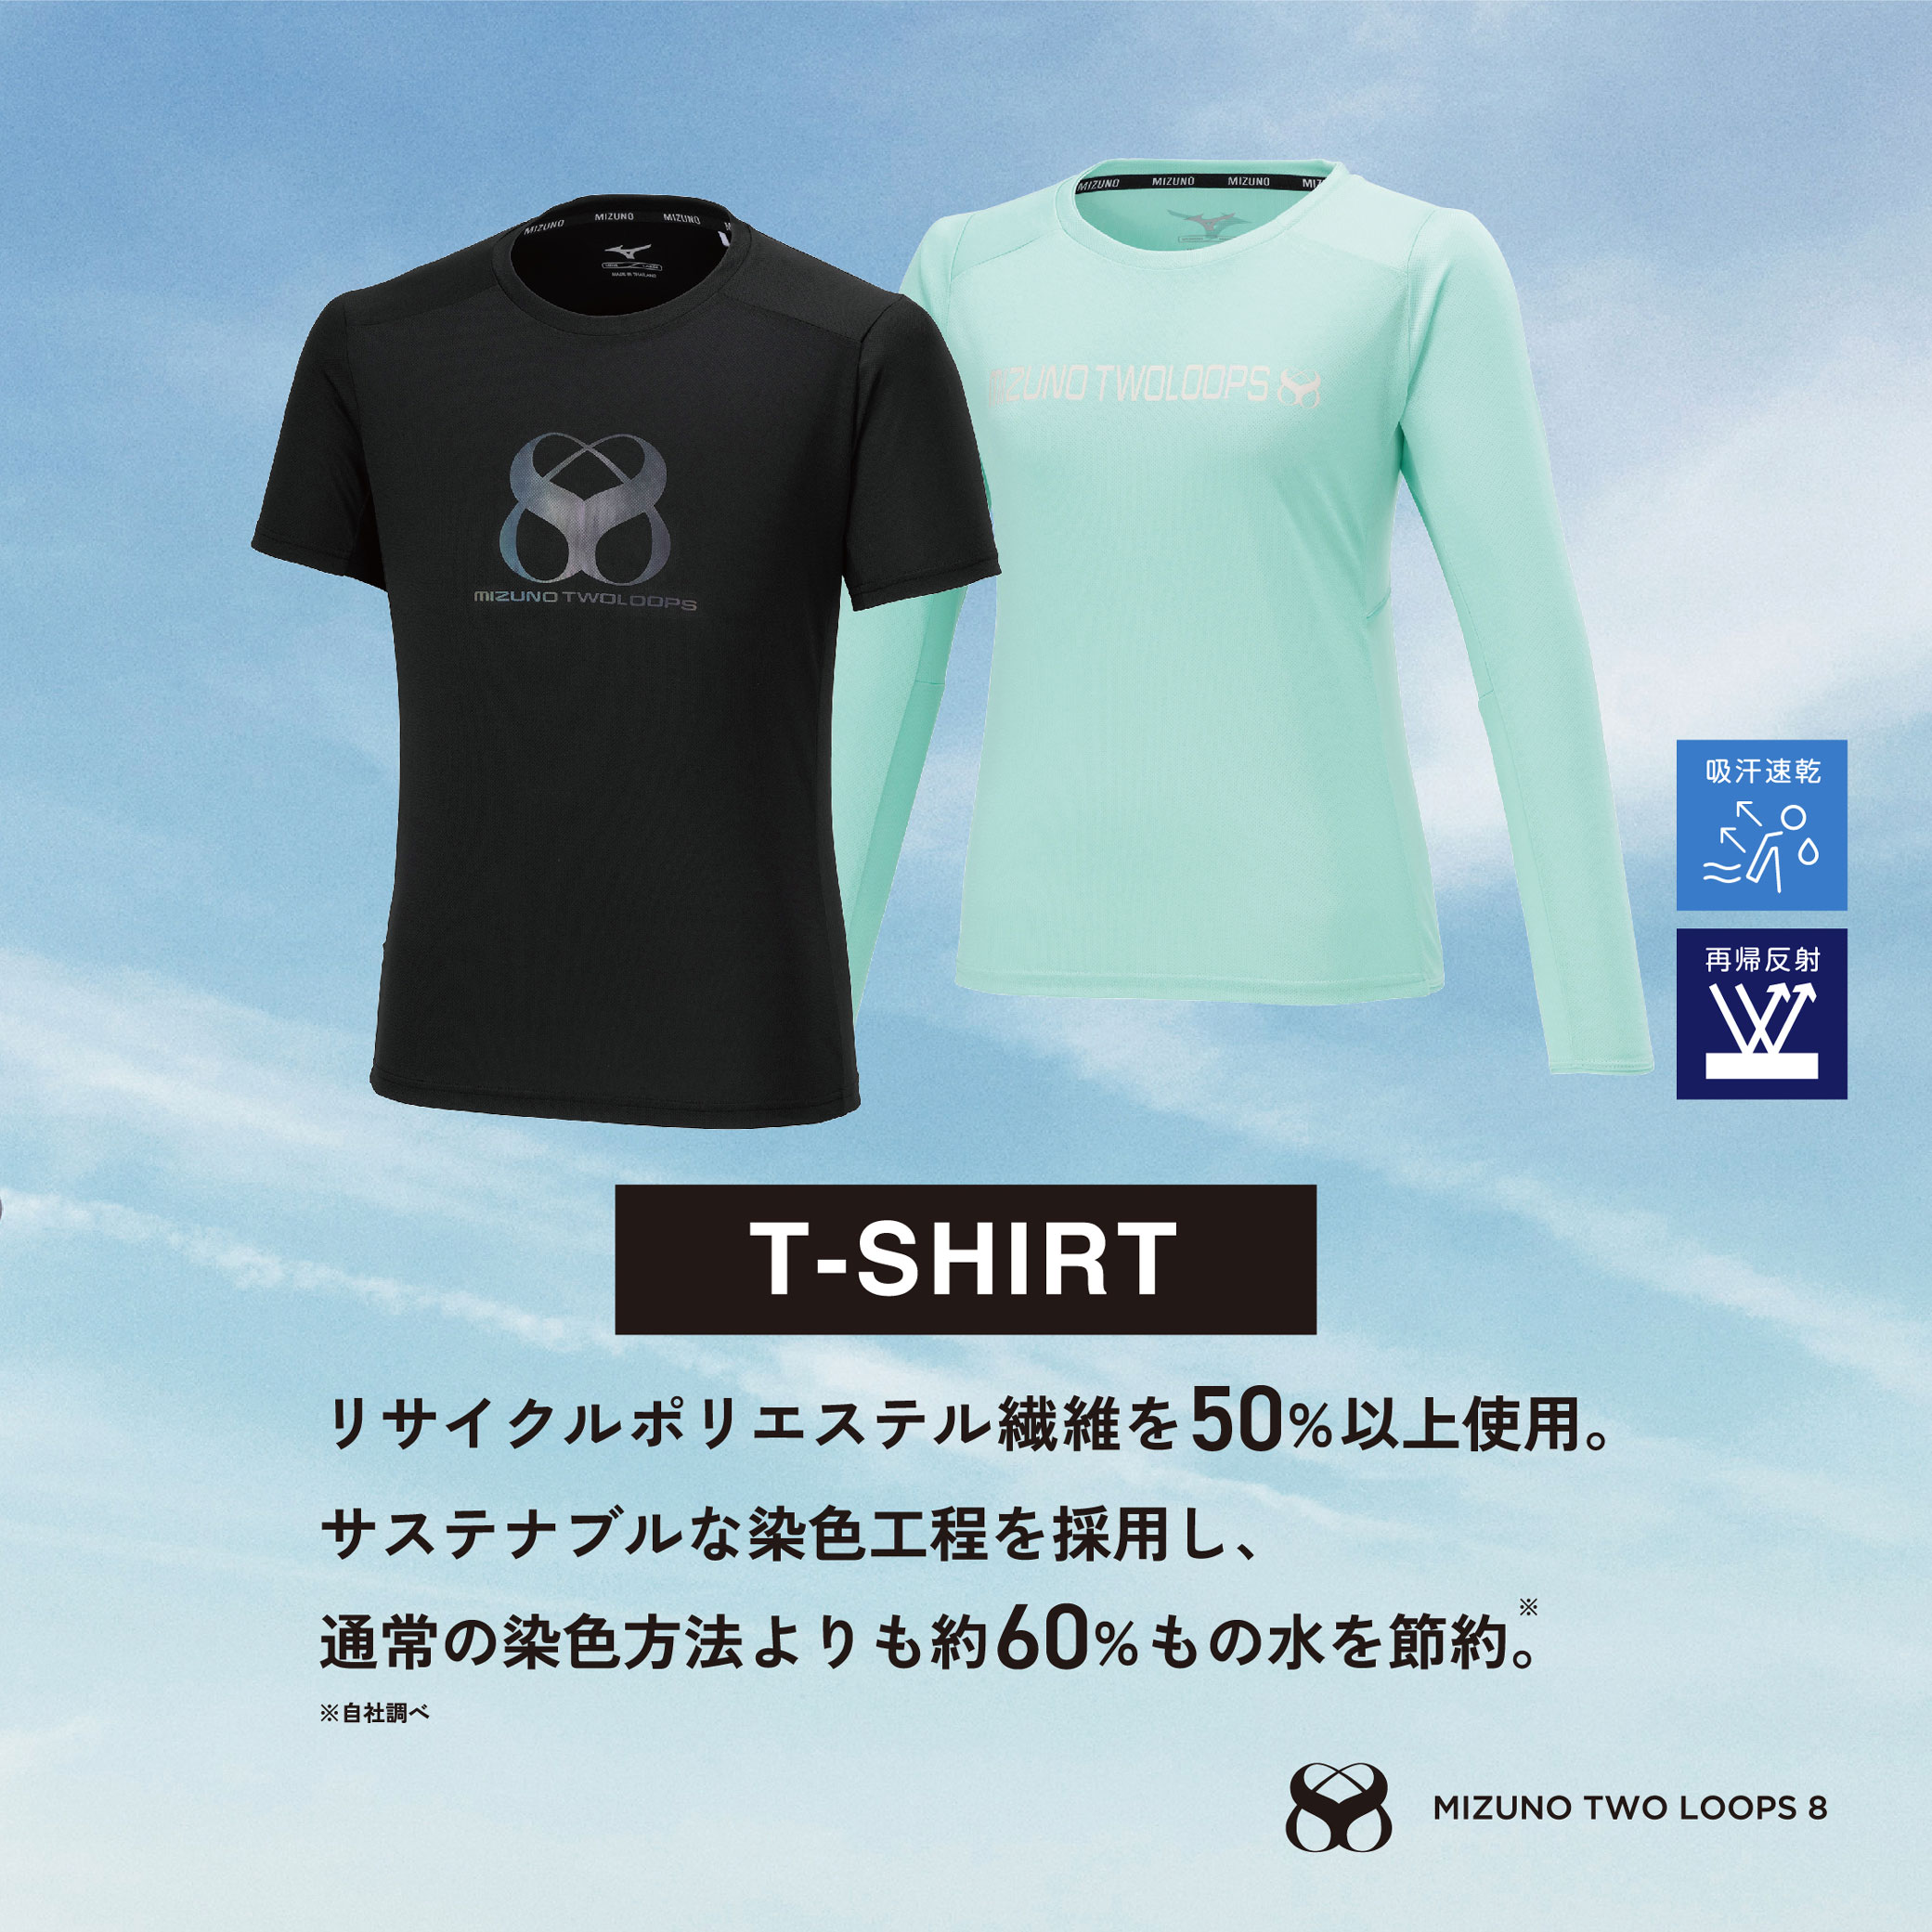 MIZUNO TWO LOOPS 8 Tシャツ[ウィメンズ]